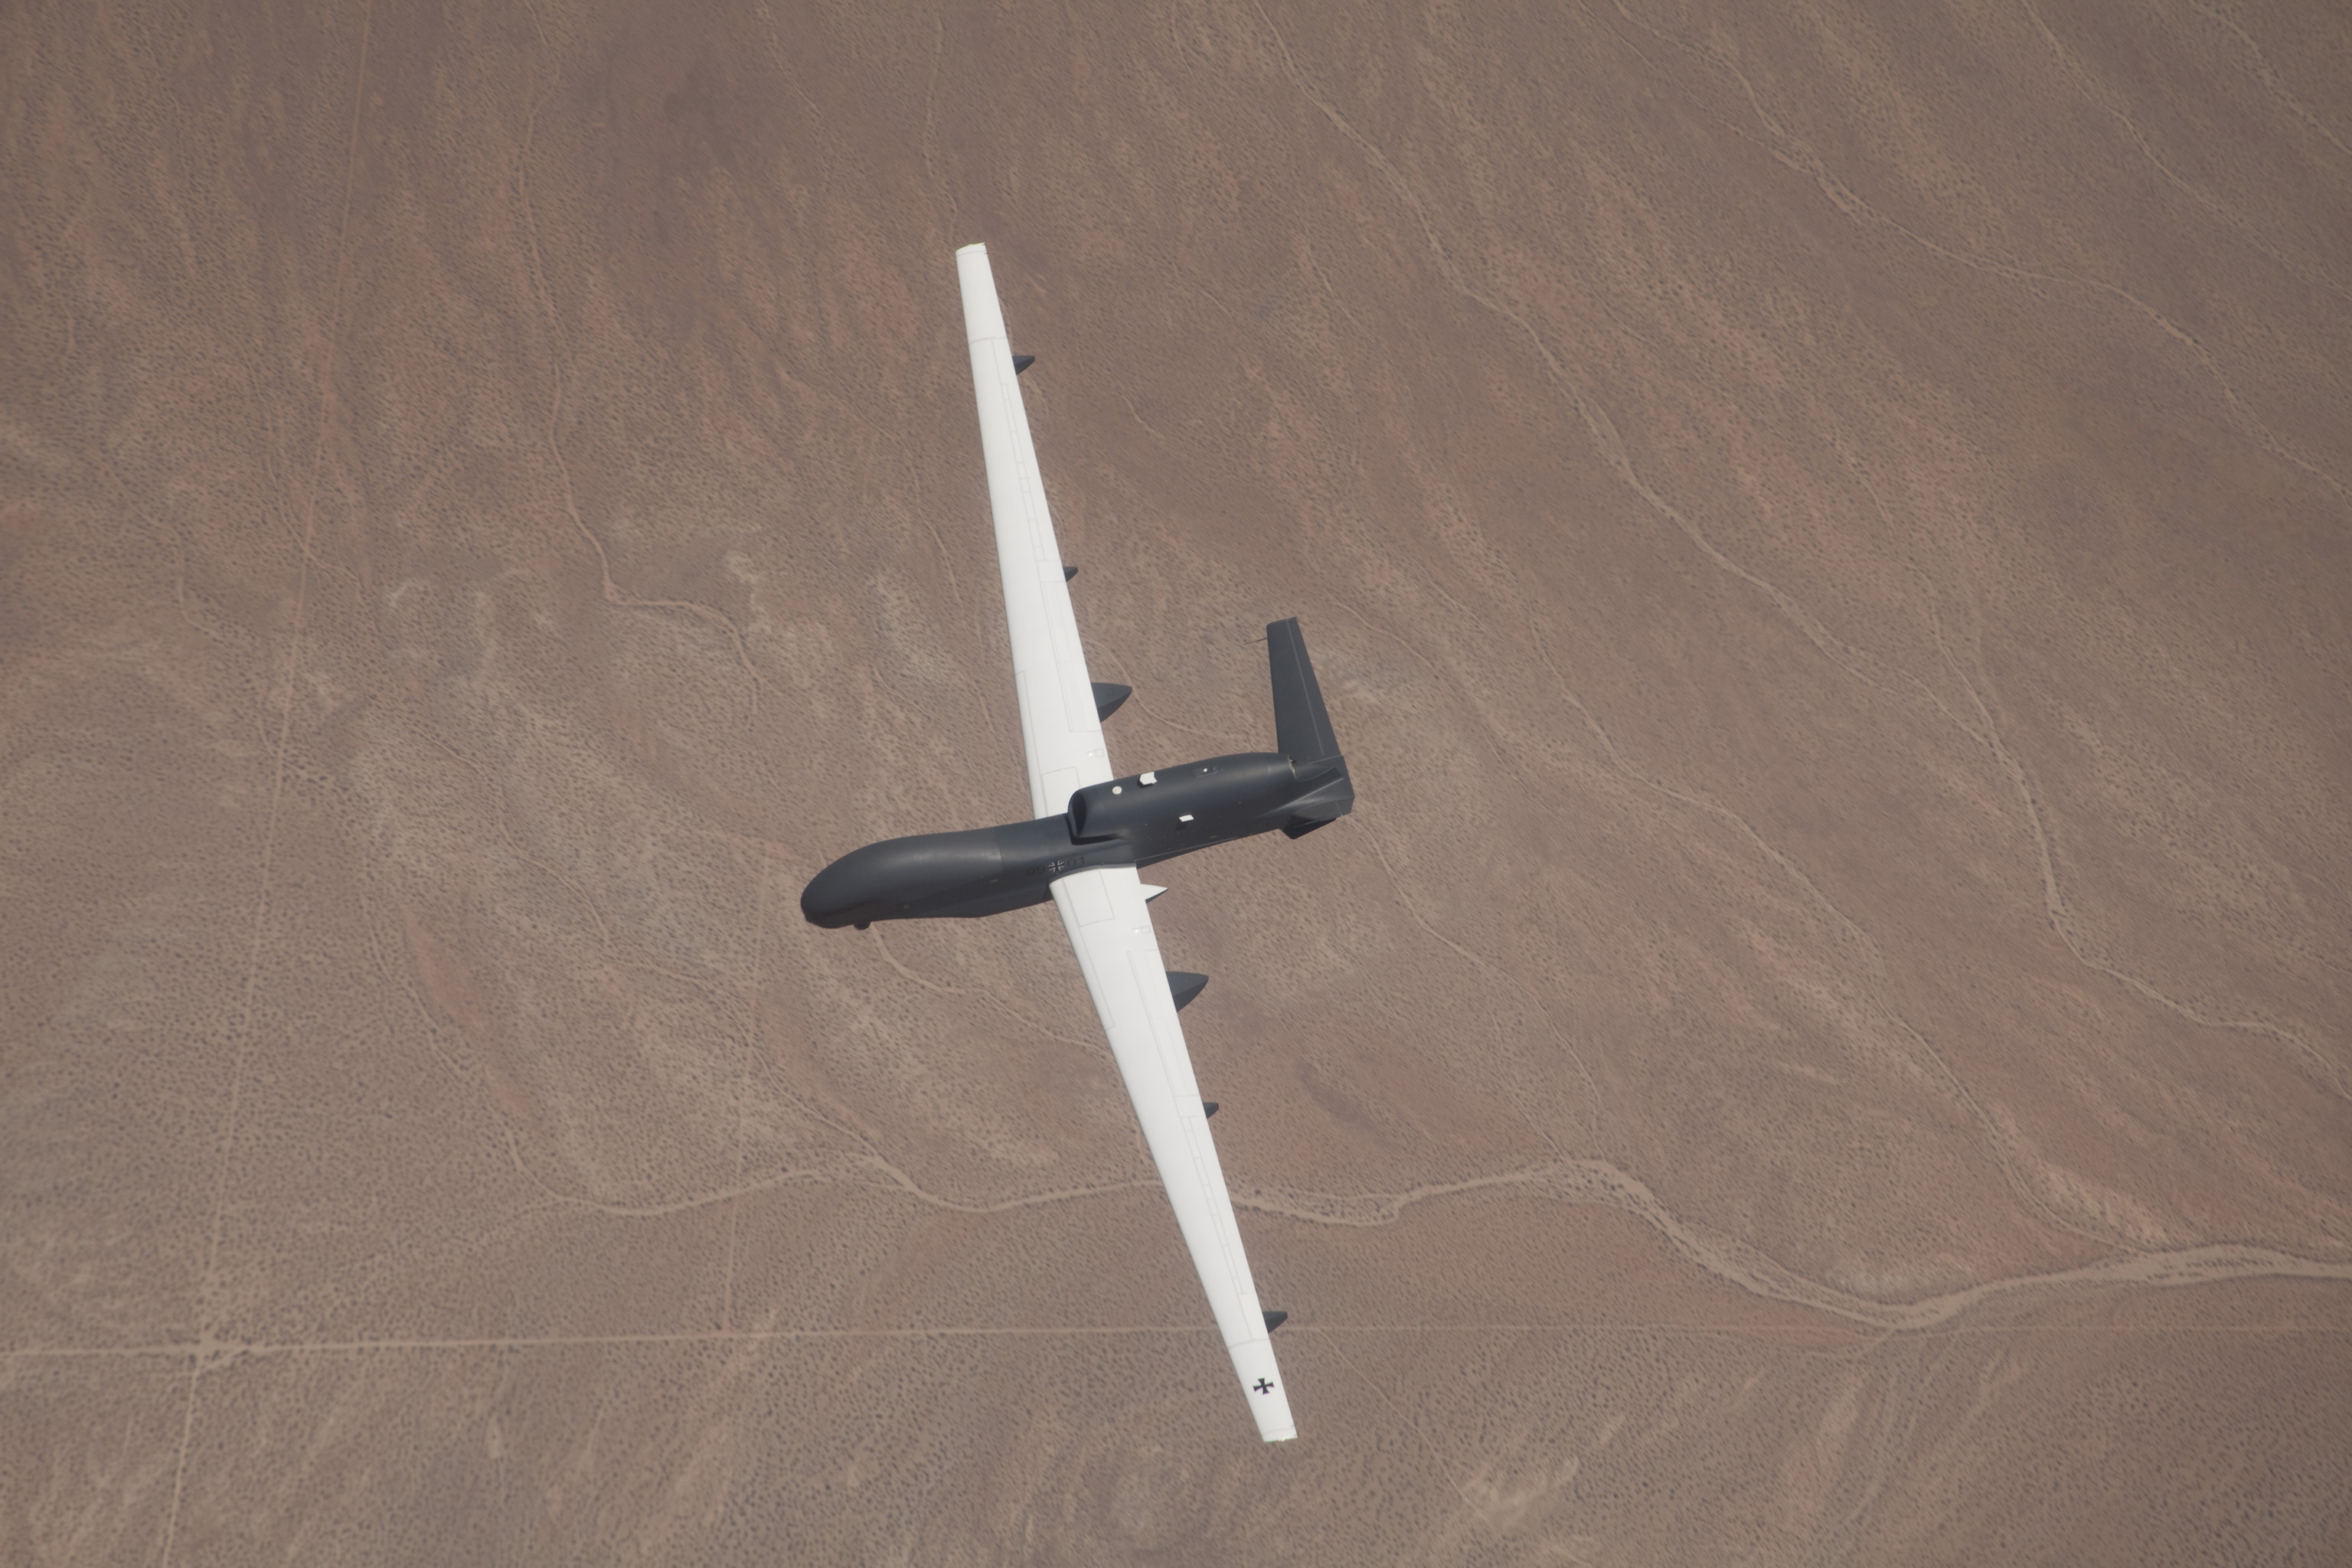 Aeroplans - Le drone Euro Hawk lors de son premier vol © Northrop Grumman